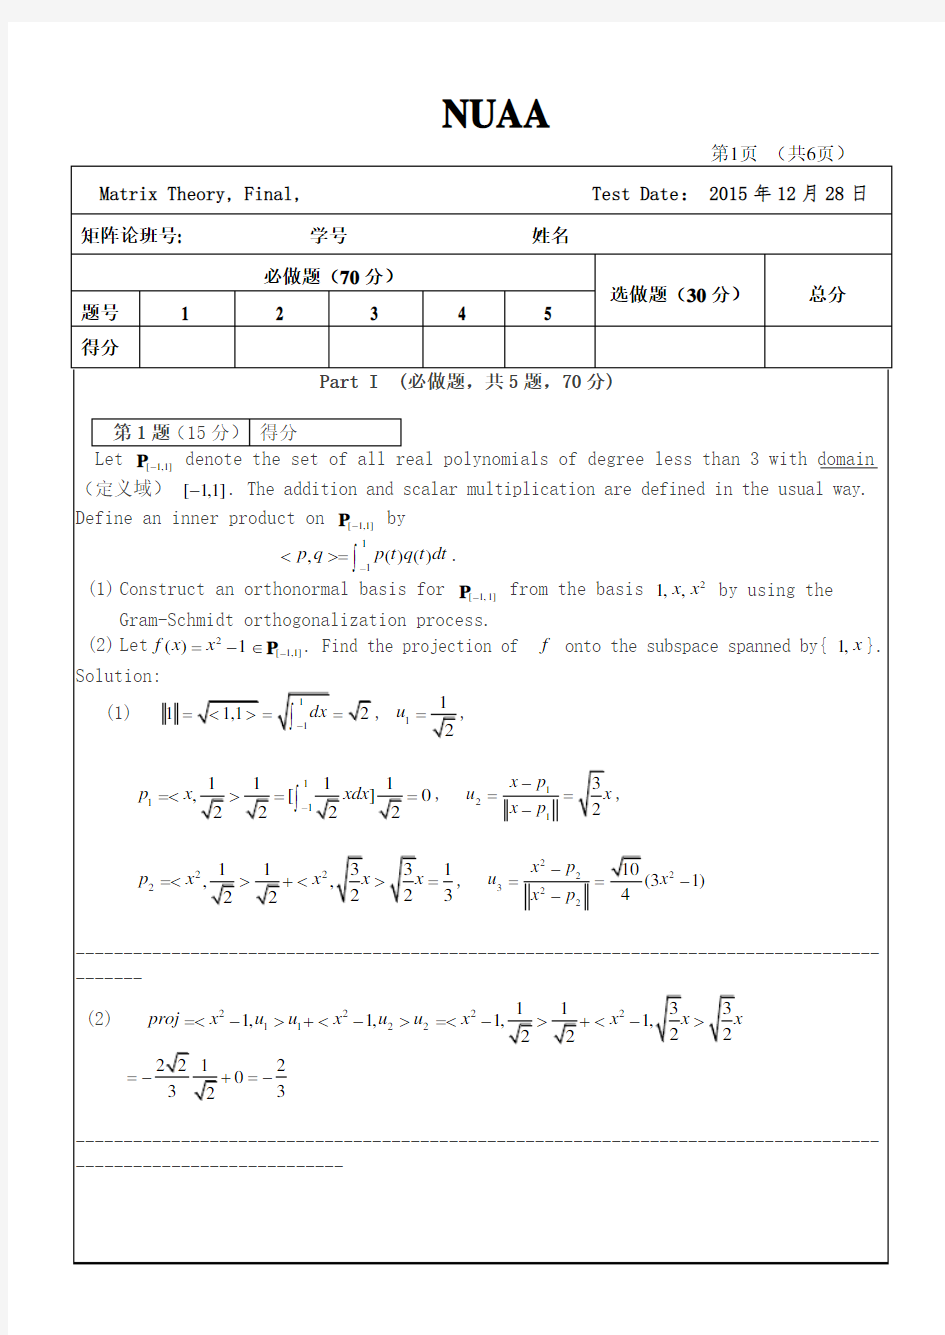 南京航空航天大学Matrix-Theory双语矩阵论期末考试2015